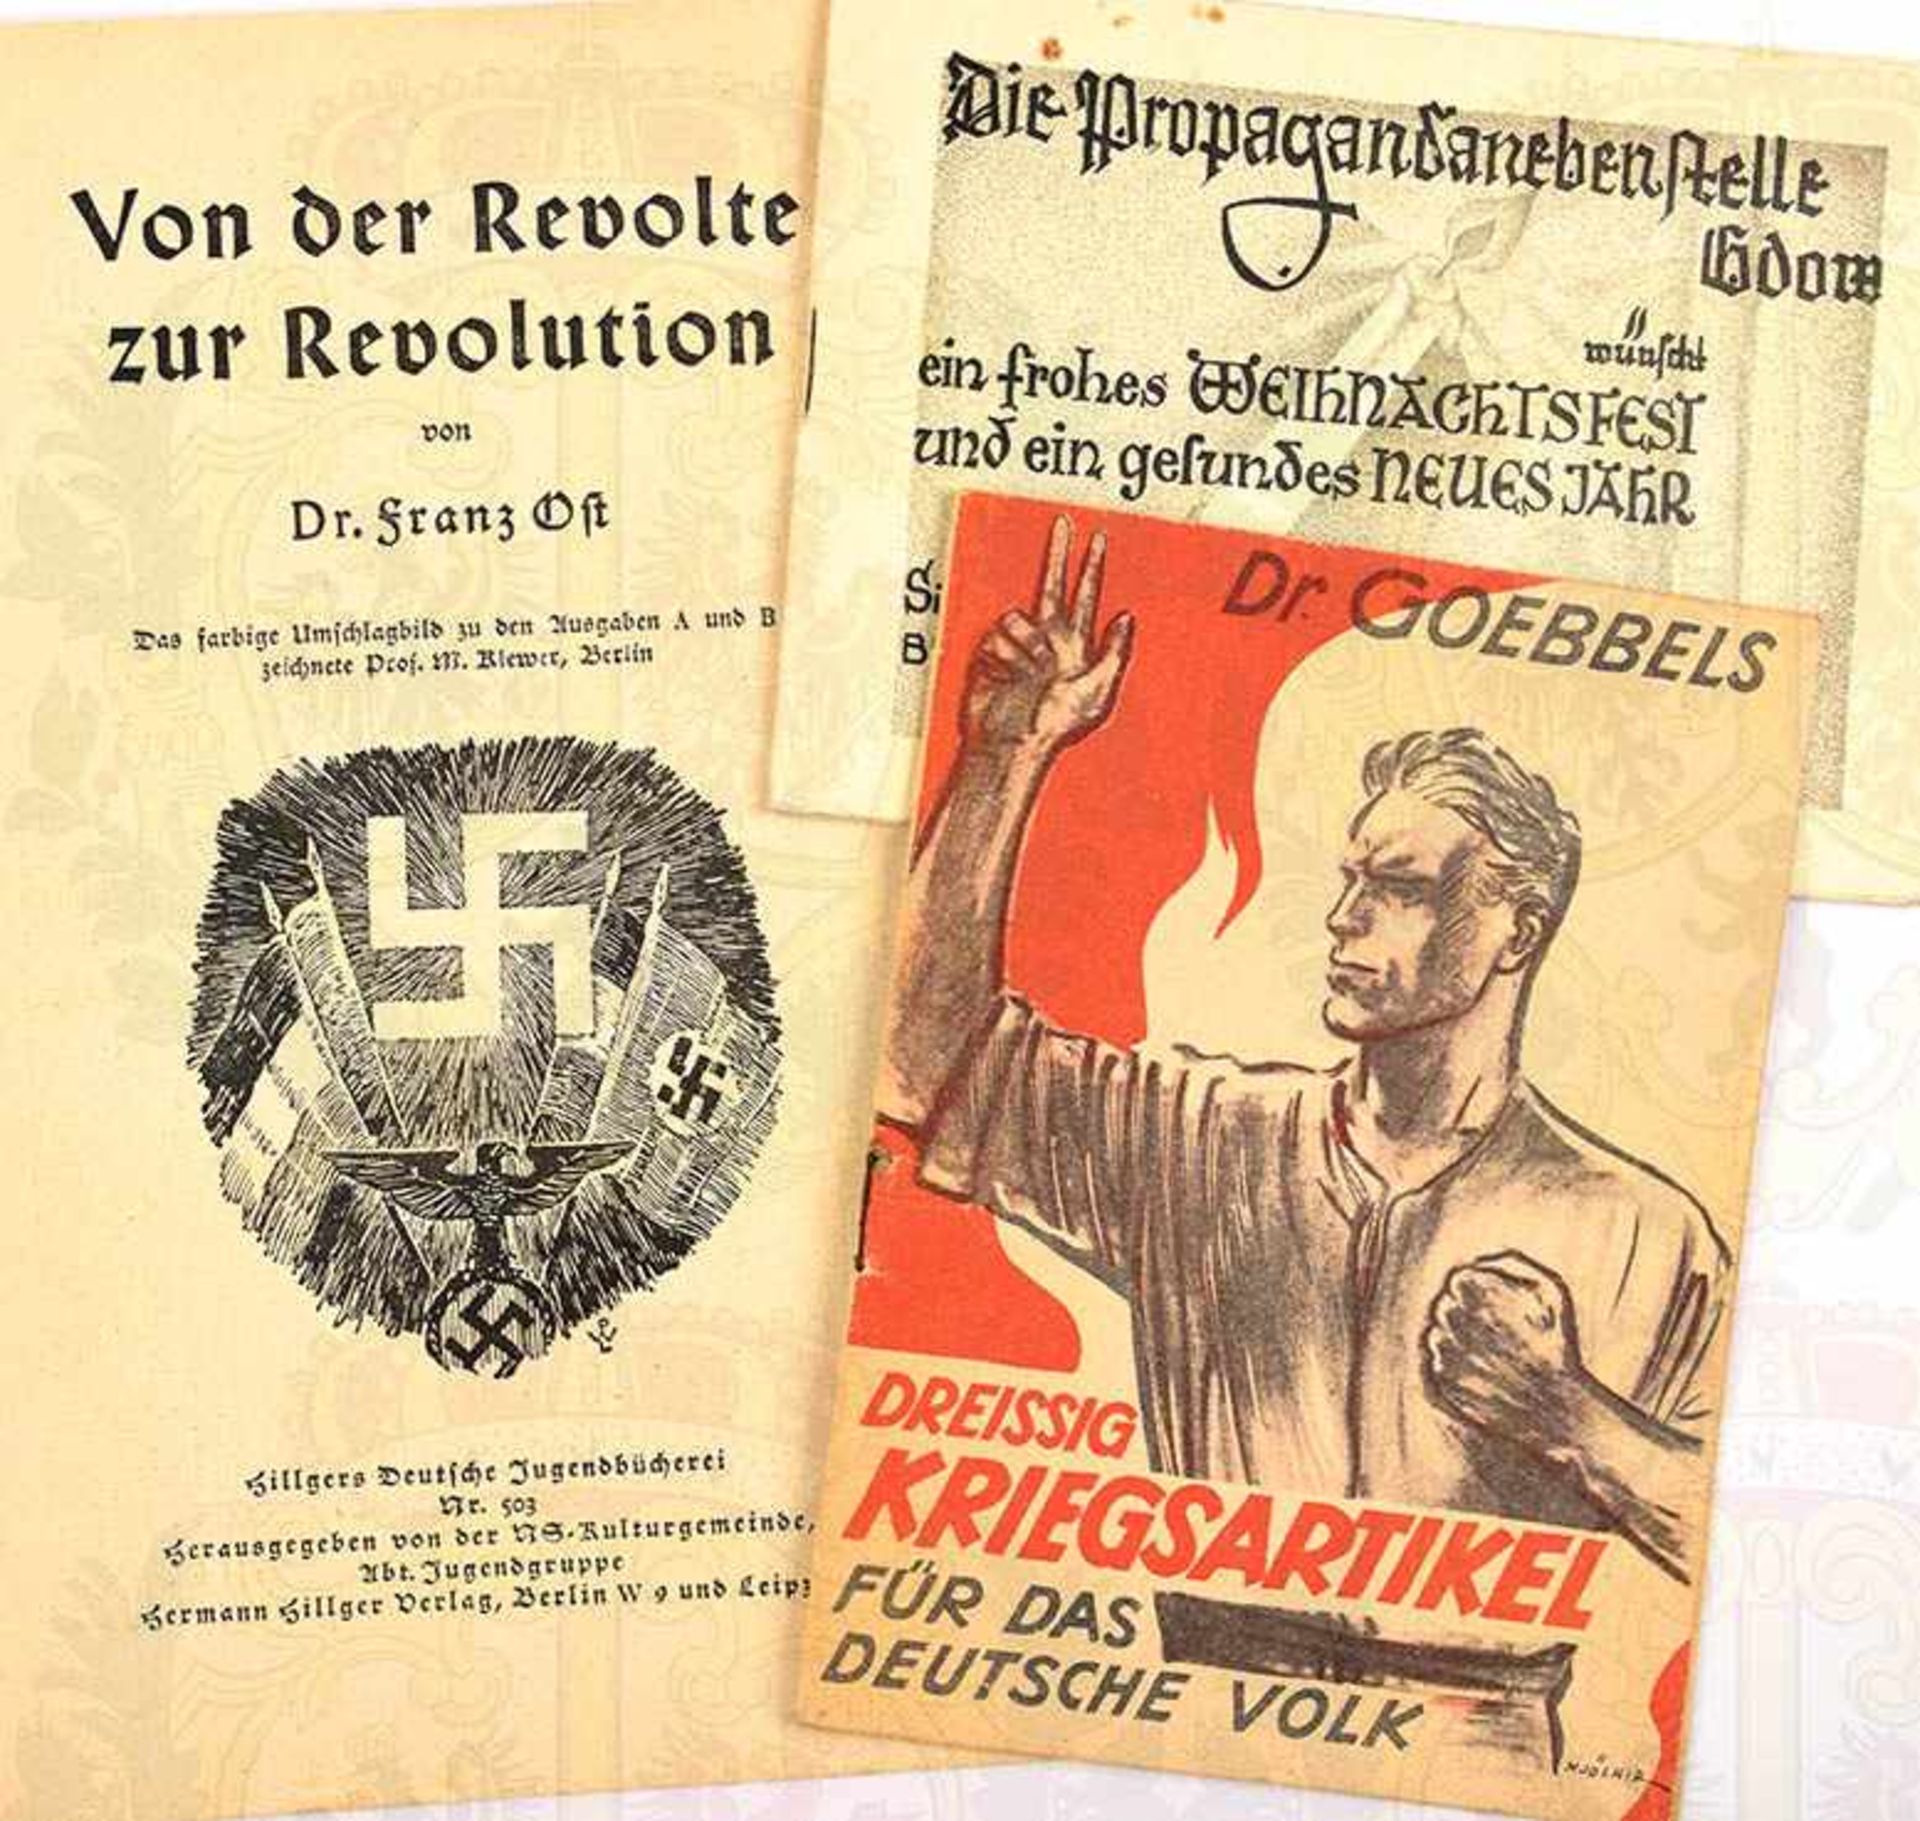 3 KLEINSCHRIFTEN, 30 Kriegsartikel für das Deutsche Volk; Die Propagandastelle Gdow; Von der Revolte